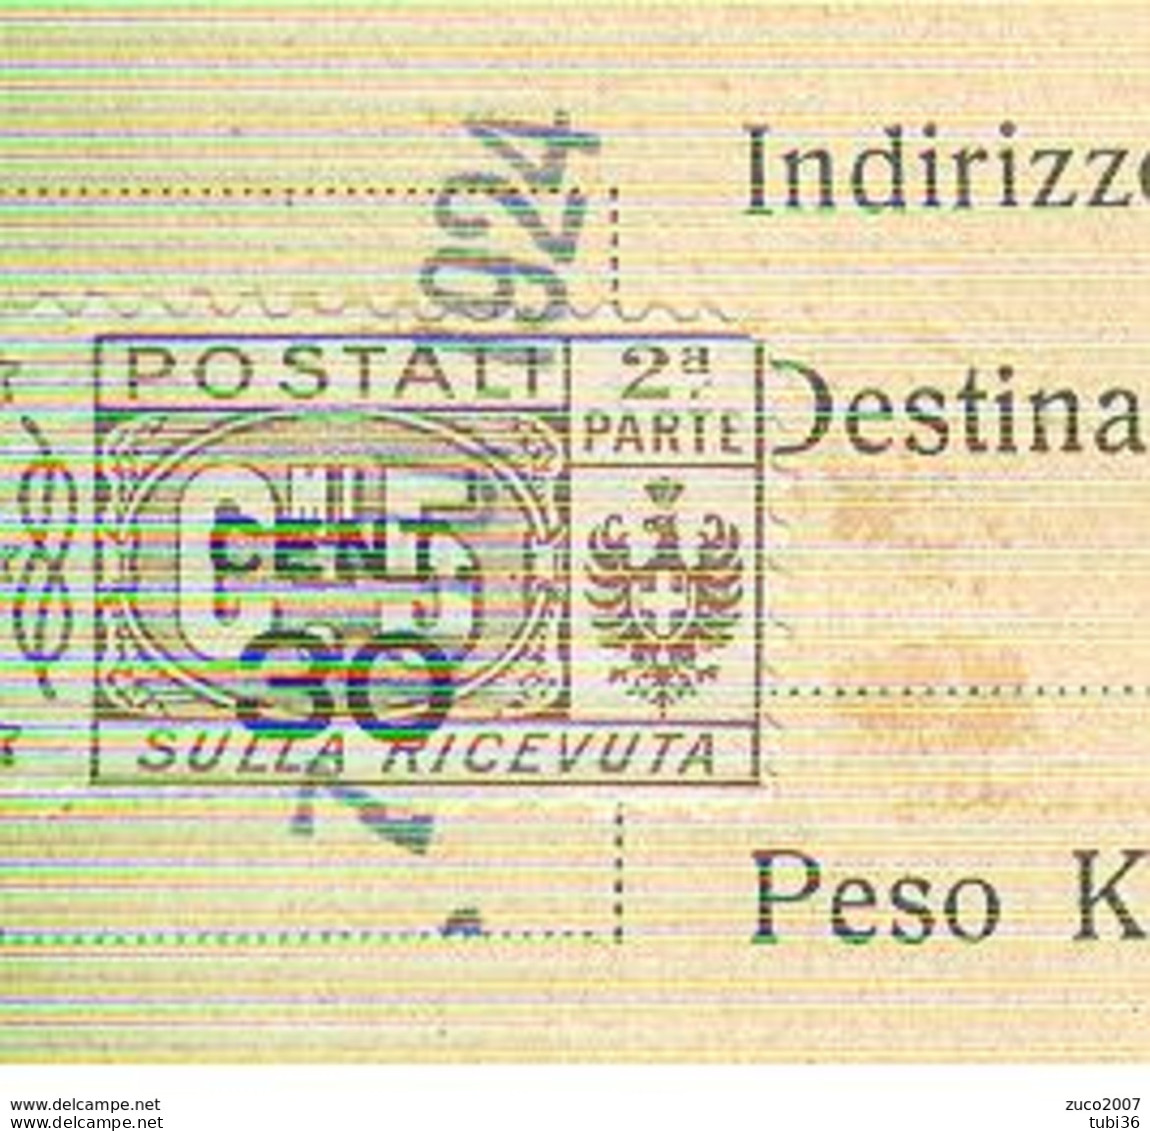 PACCHI POSTALI Cent.30 Su 5- 2° PARTE SULLA RICEVUTA-1924 - MANGANESE CORRIERE-CASTELNUOVO SCRIVIA (ALESSANDRIA), - Colis-postaux